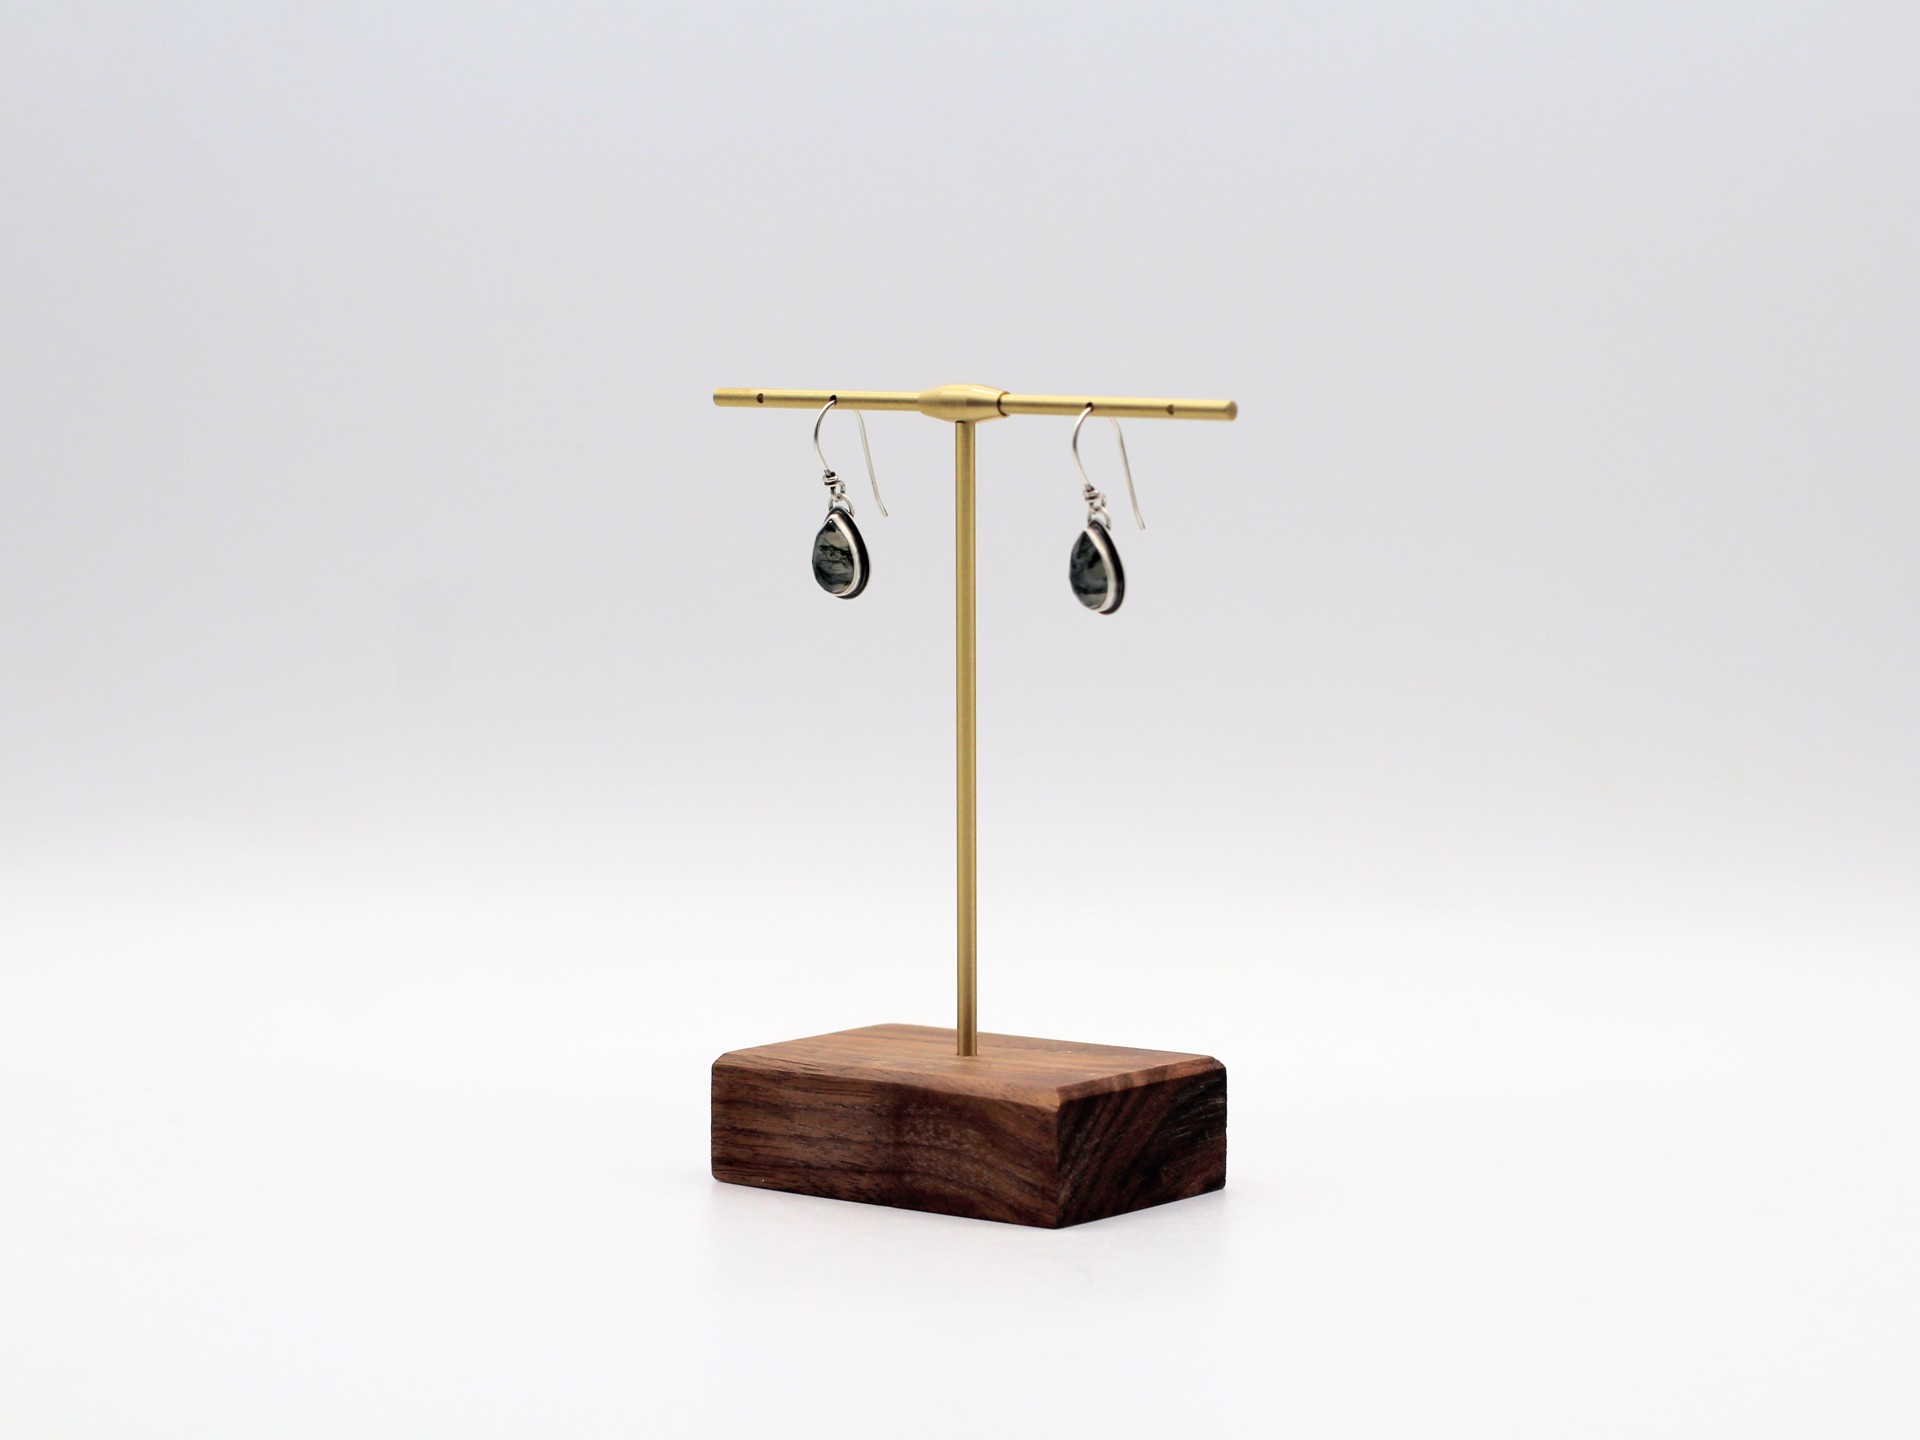 Moss Agate Earrings by Kim Knuth